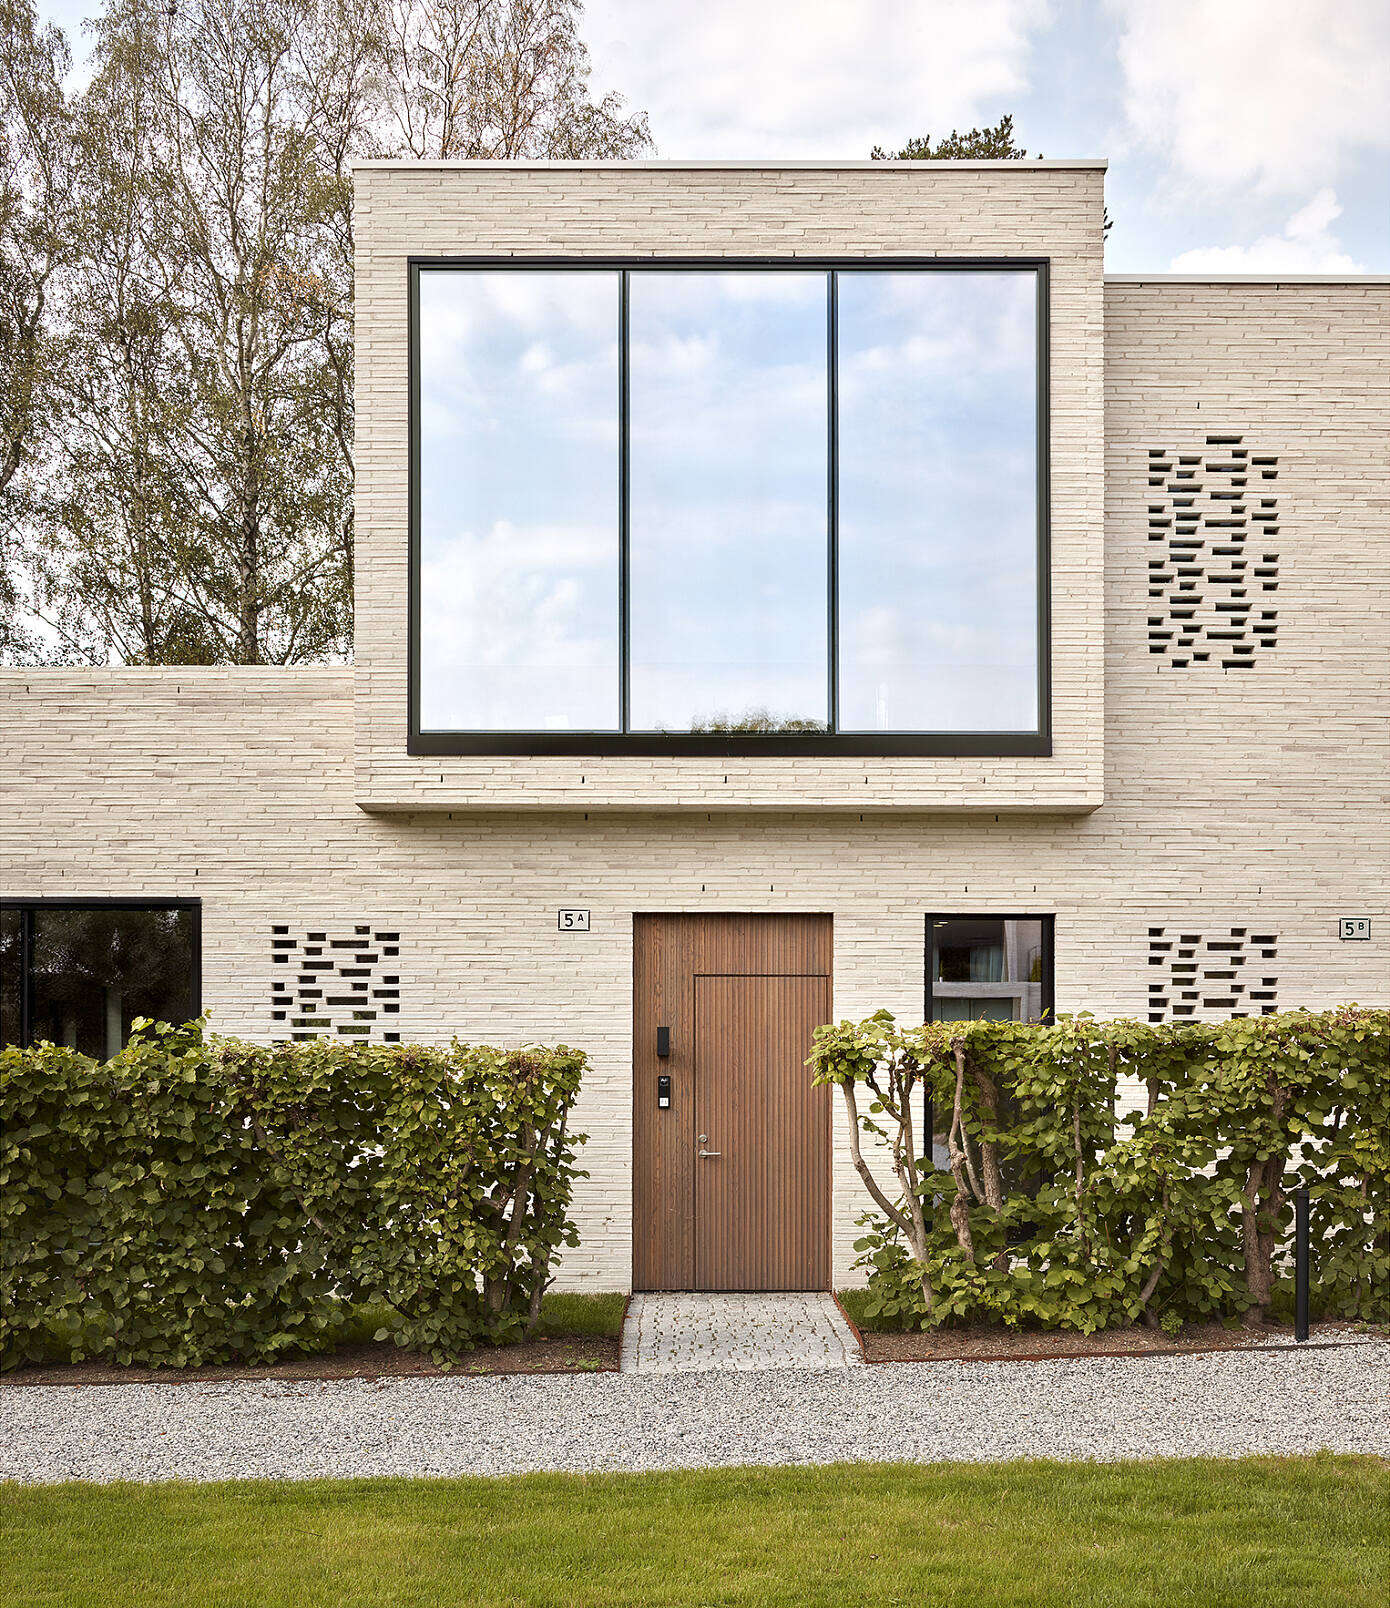 Home in Oslo by Reiulf Ramstad Arkitekter